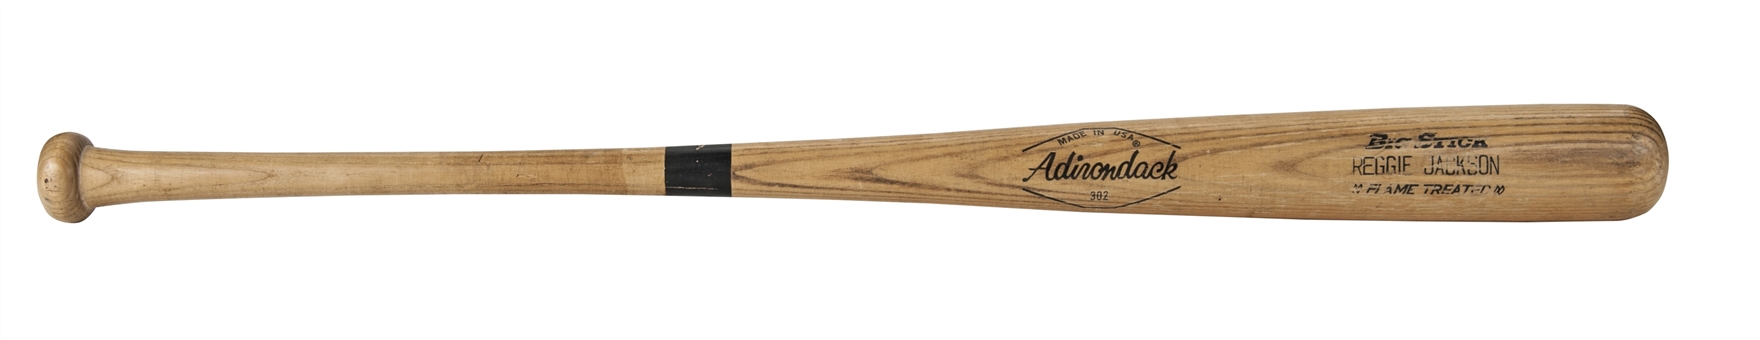 1977-79 Reggie Jackson NY Yankees Game Used Adirondack 288RJ Model Bat (PSA/DNA LOA)